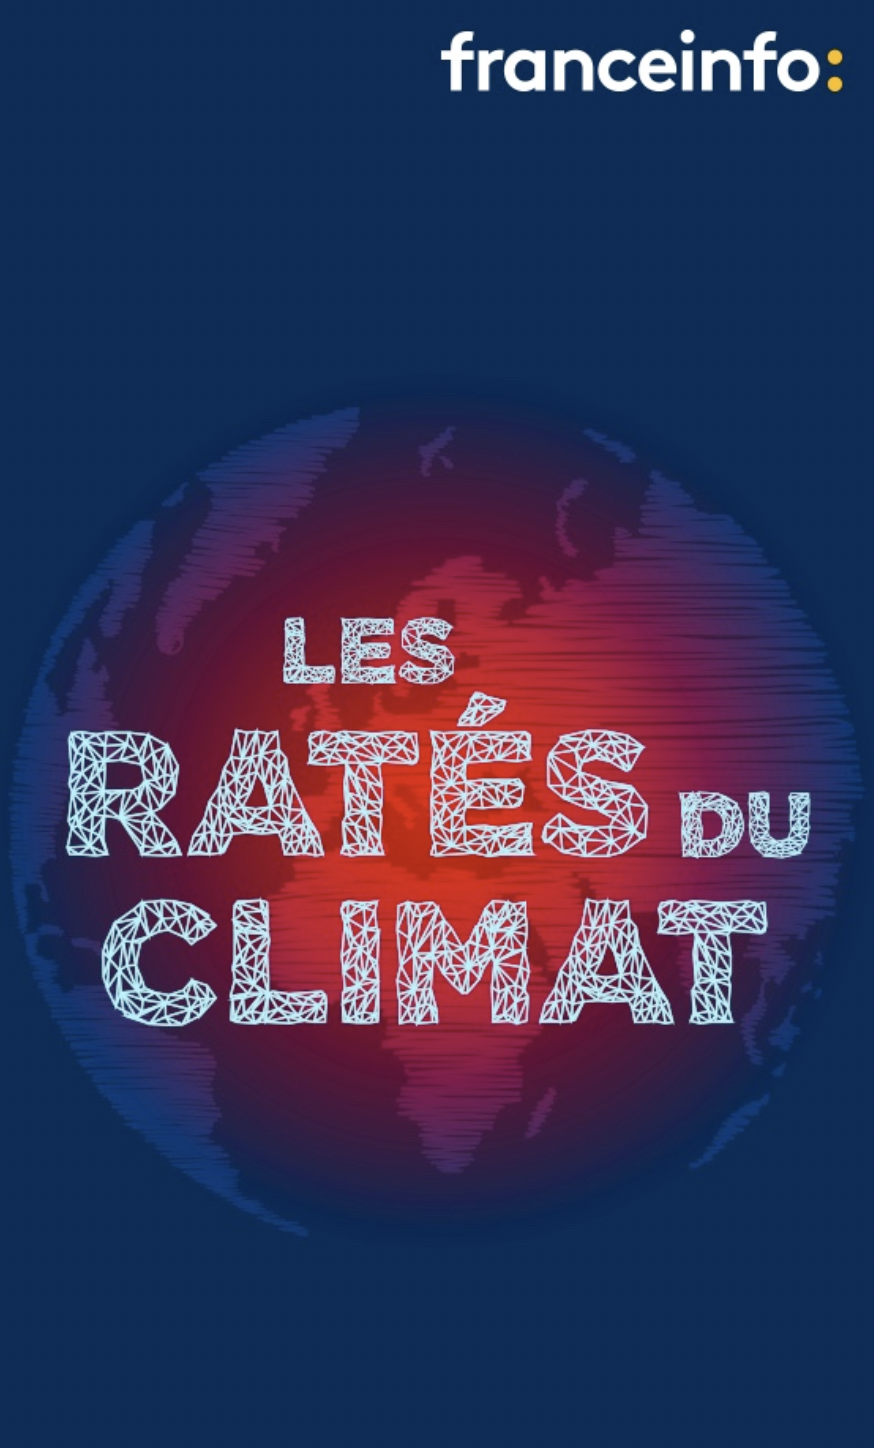 franceinfo : "Les ratés du climat", nouveau podcast disponible